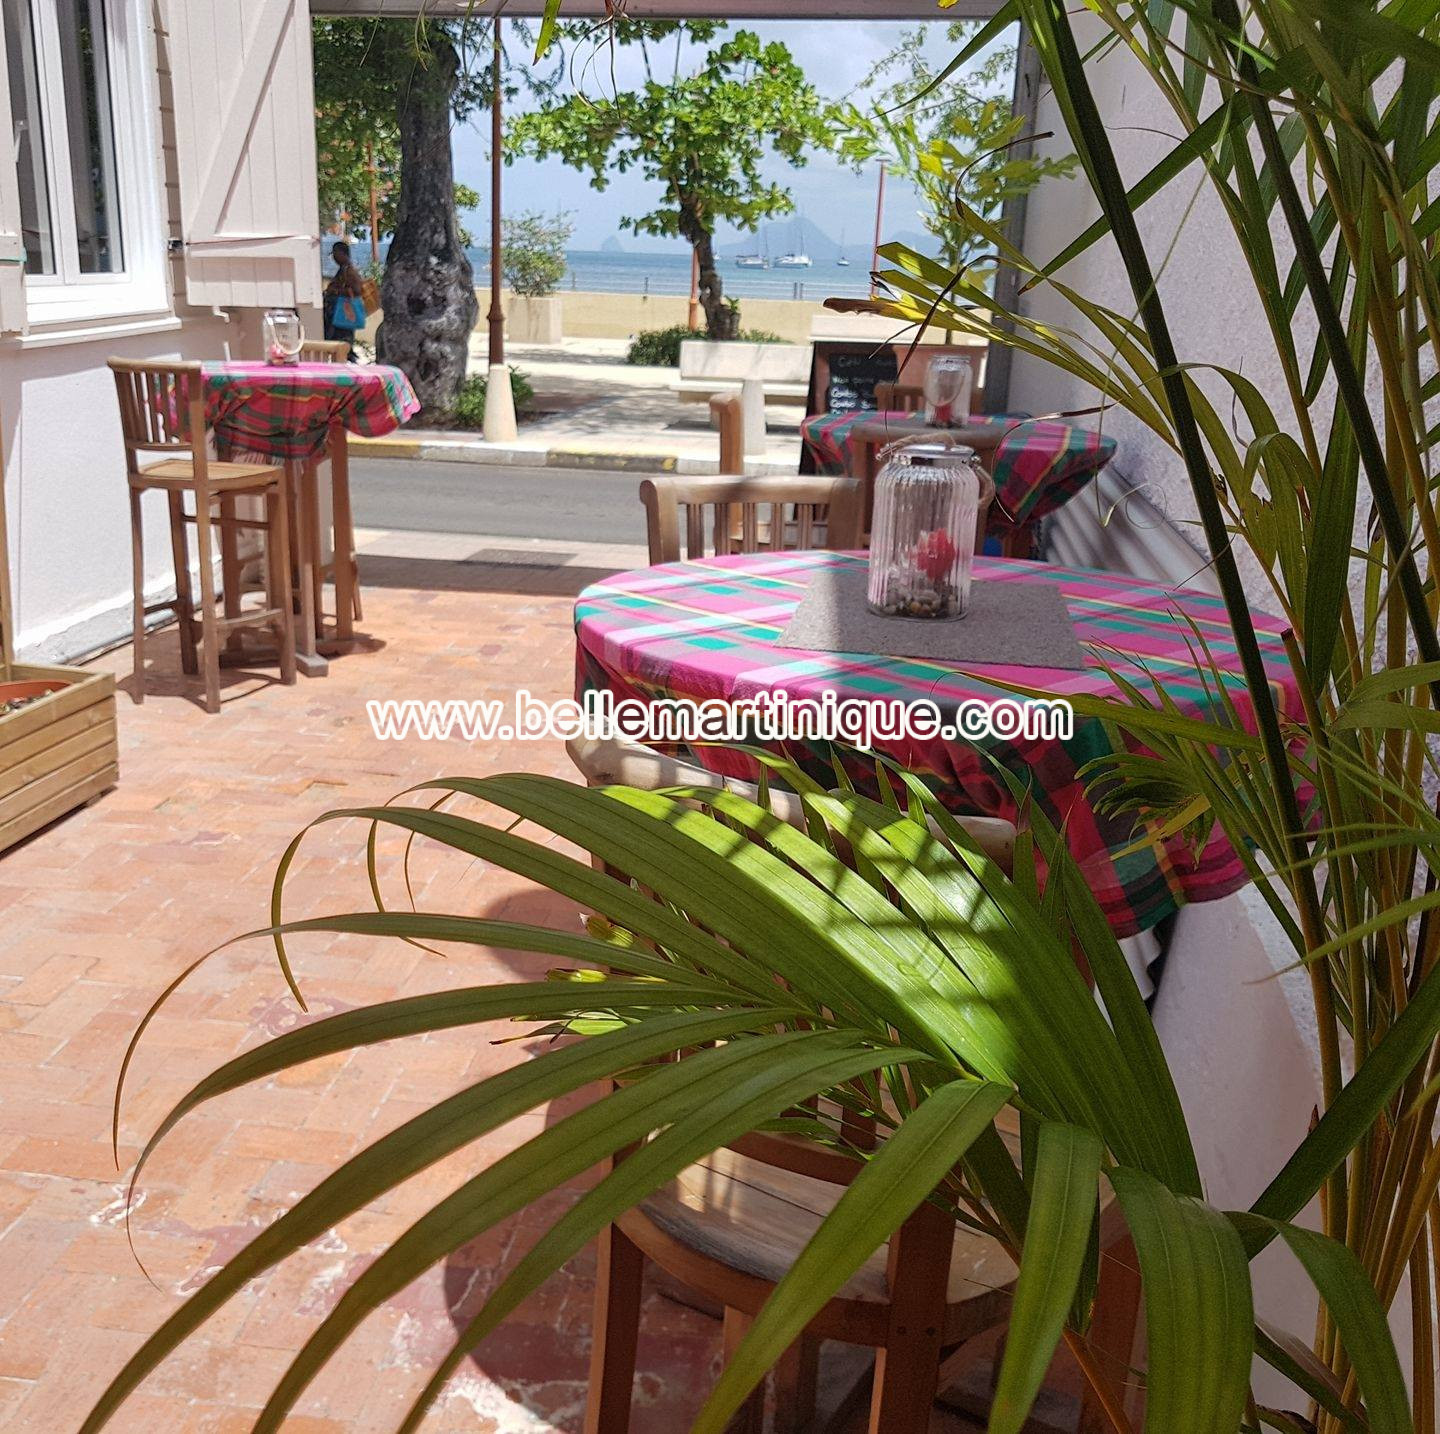 La cour Creole - Restaurant - Sainte anne - Martinique - Antilles - Caraibes 3